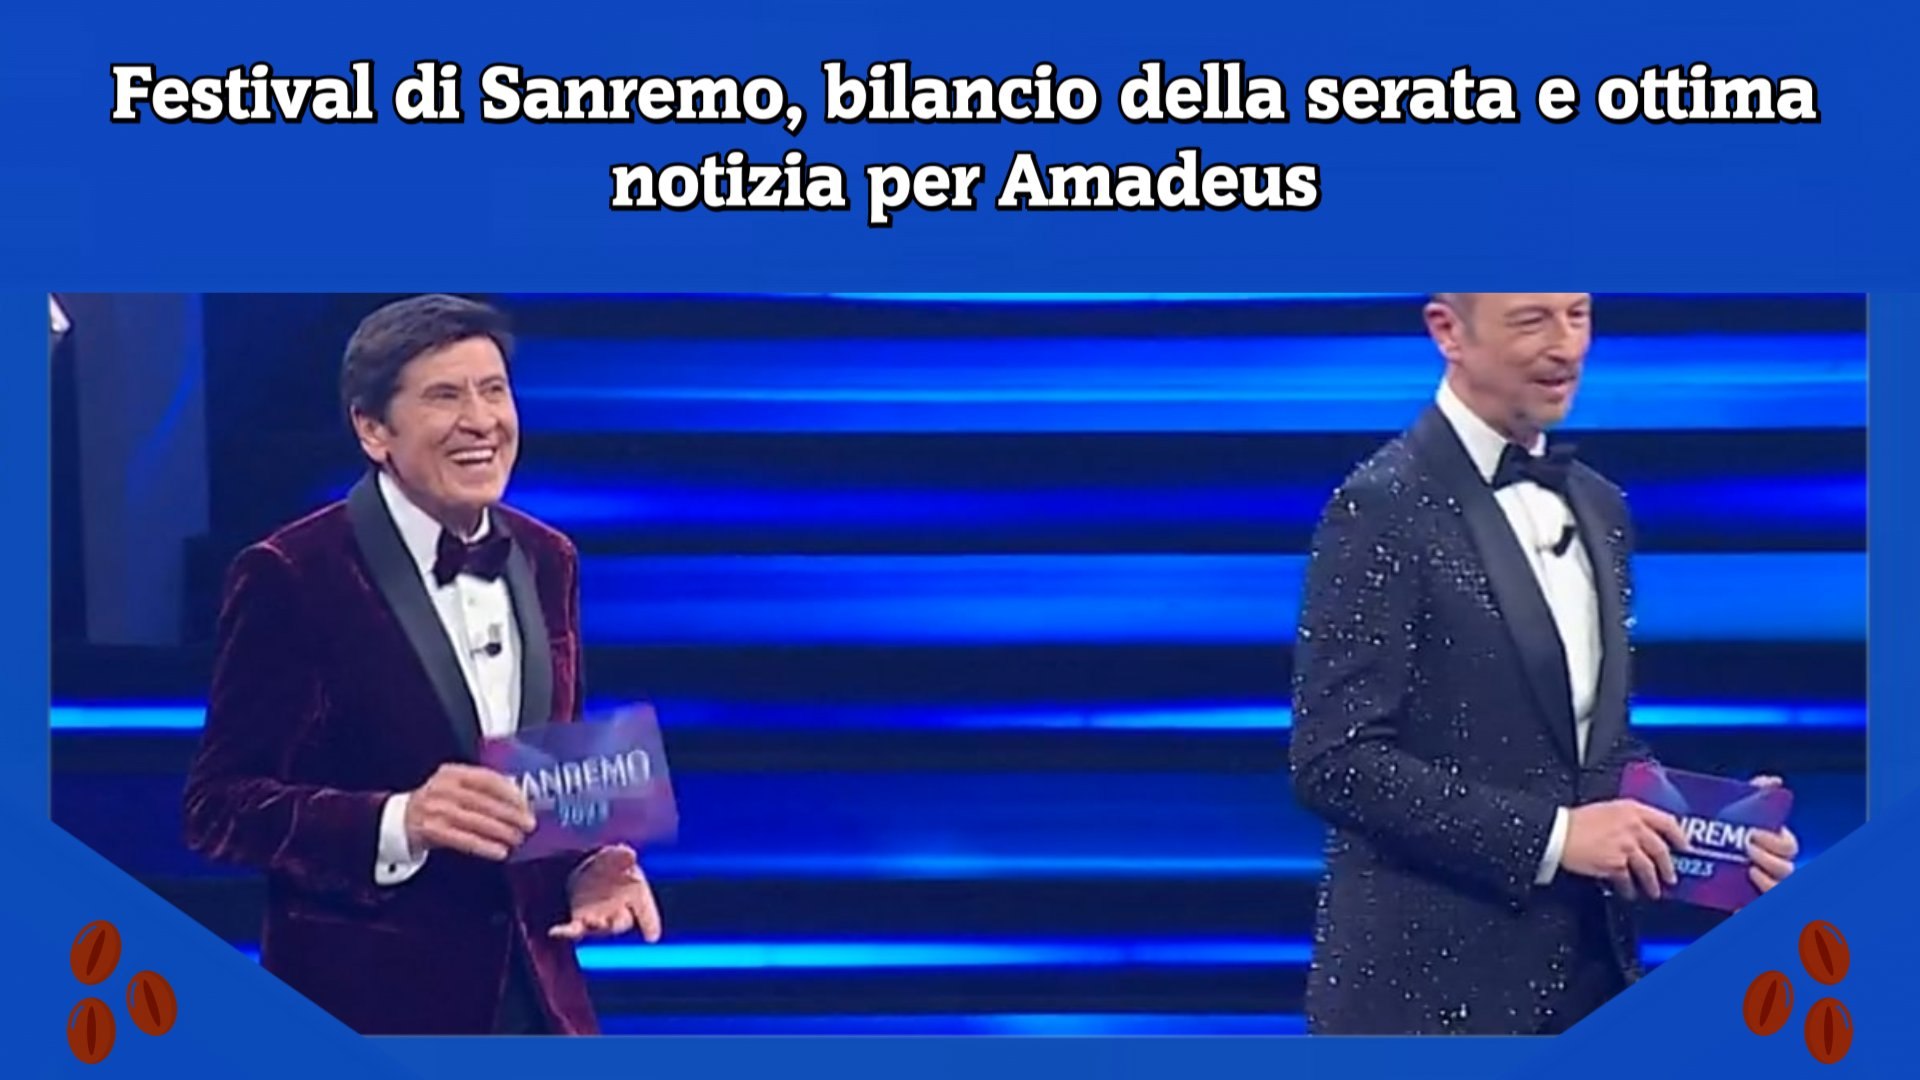 Festival di Sanremo, bilancio della serata e ottima notizia per Amadeus -  Video Dailymotion